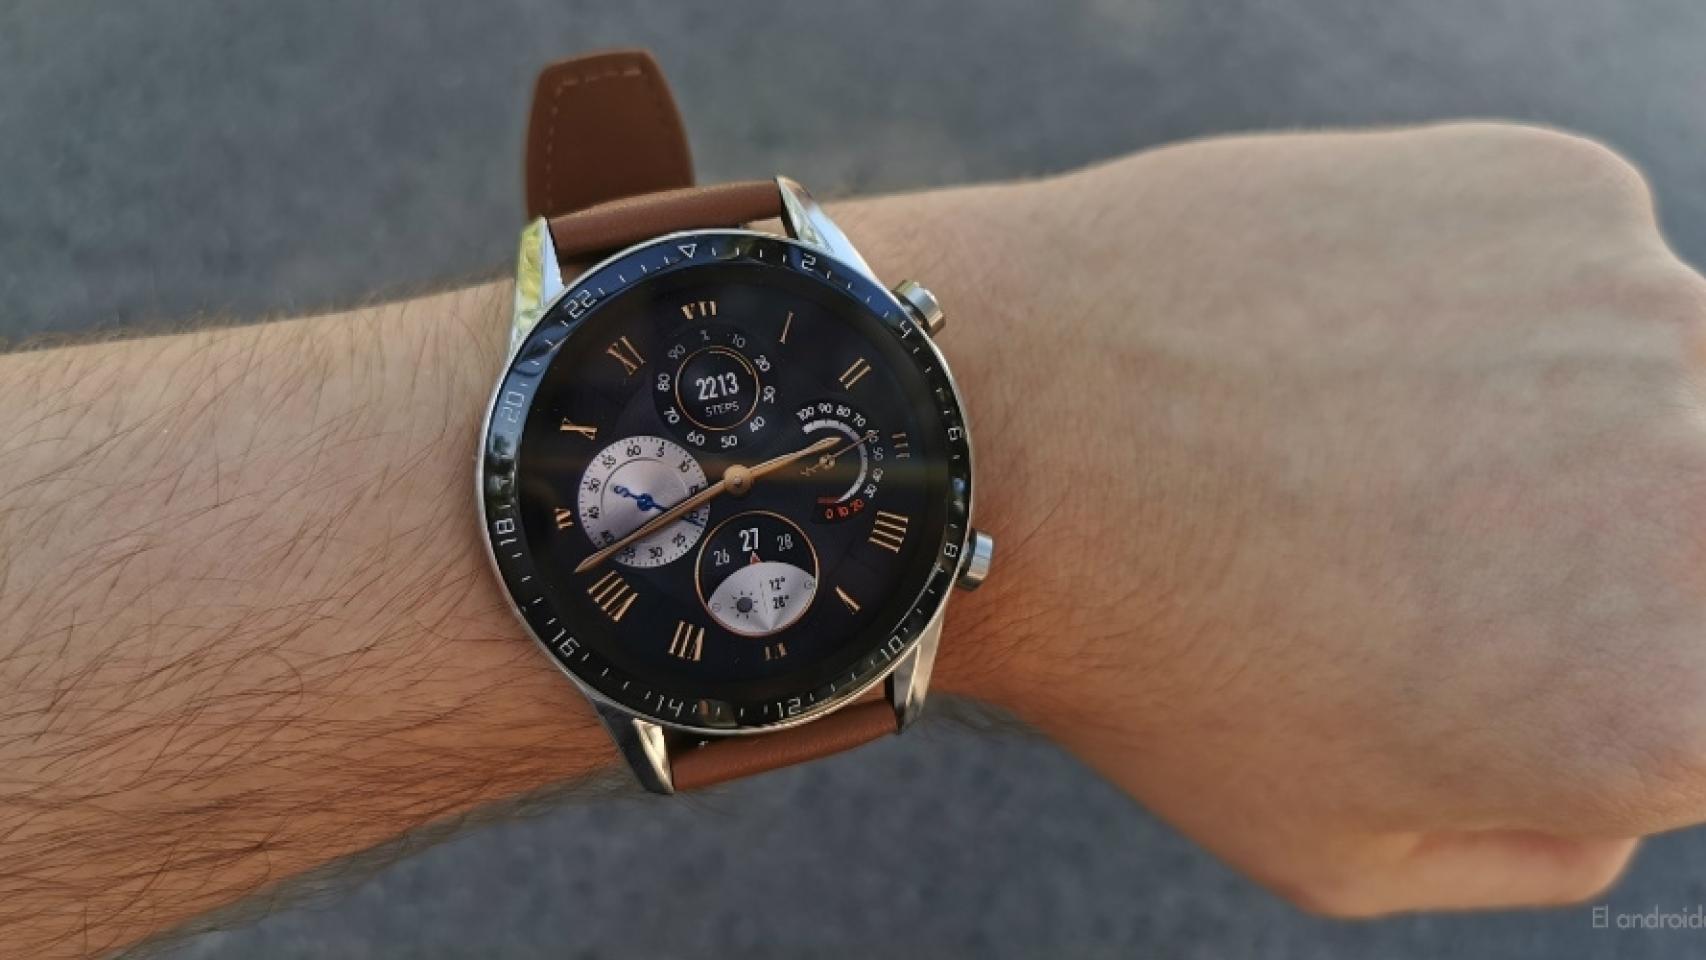 Análisis del Huawei Watch GT 2: un smartwatch muy completo con